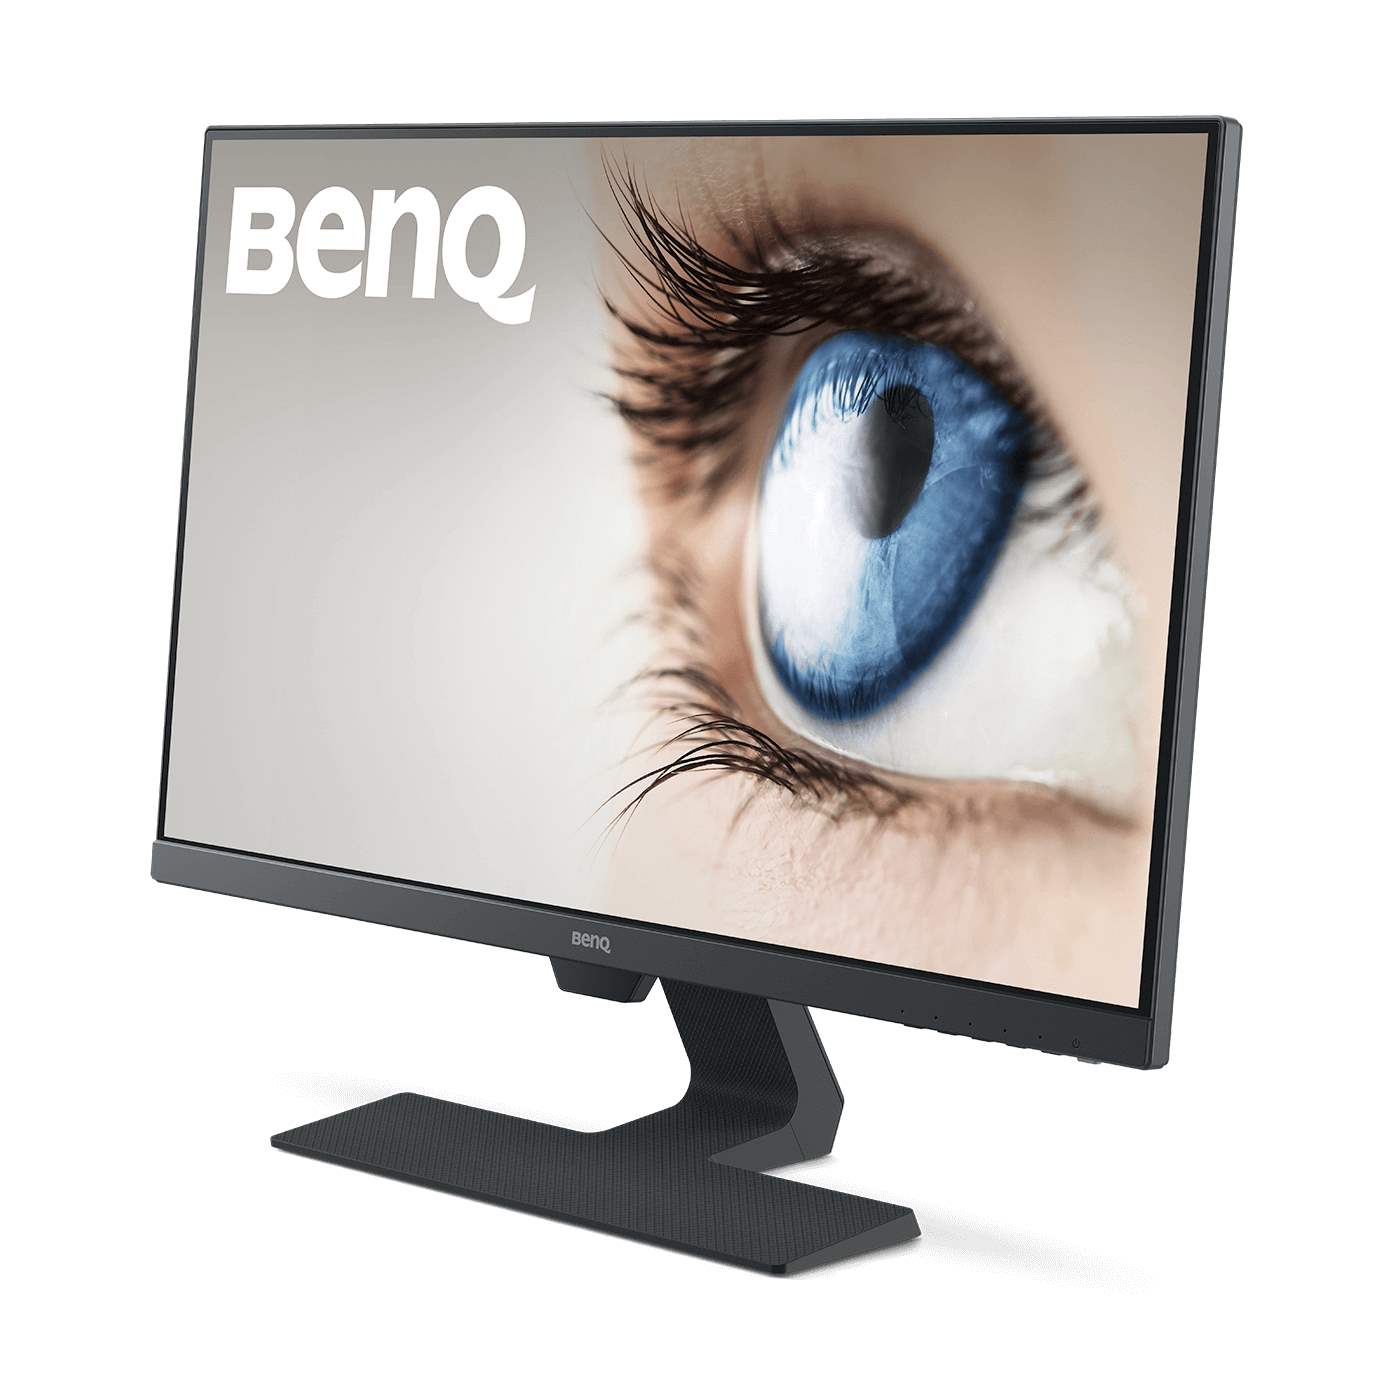 GW2780 - Stylový monitor s technologií péče o zrak, 27 palců, 1080p